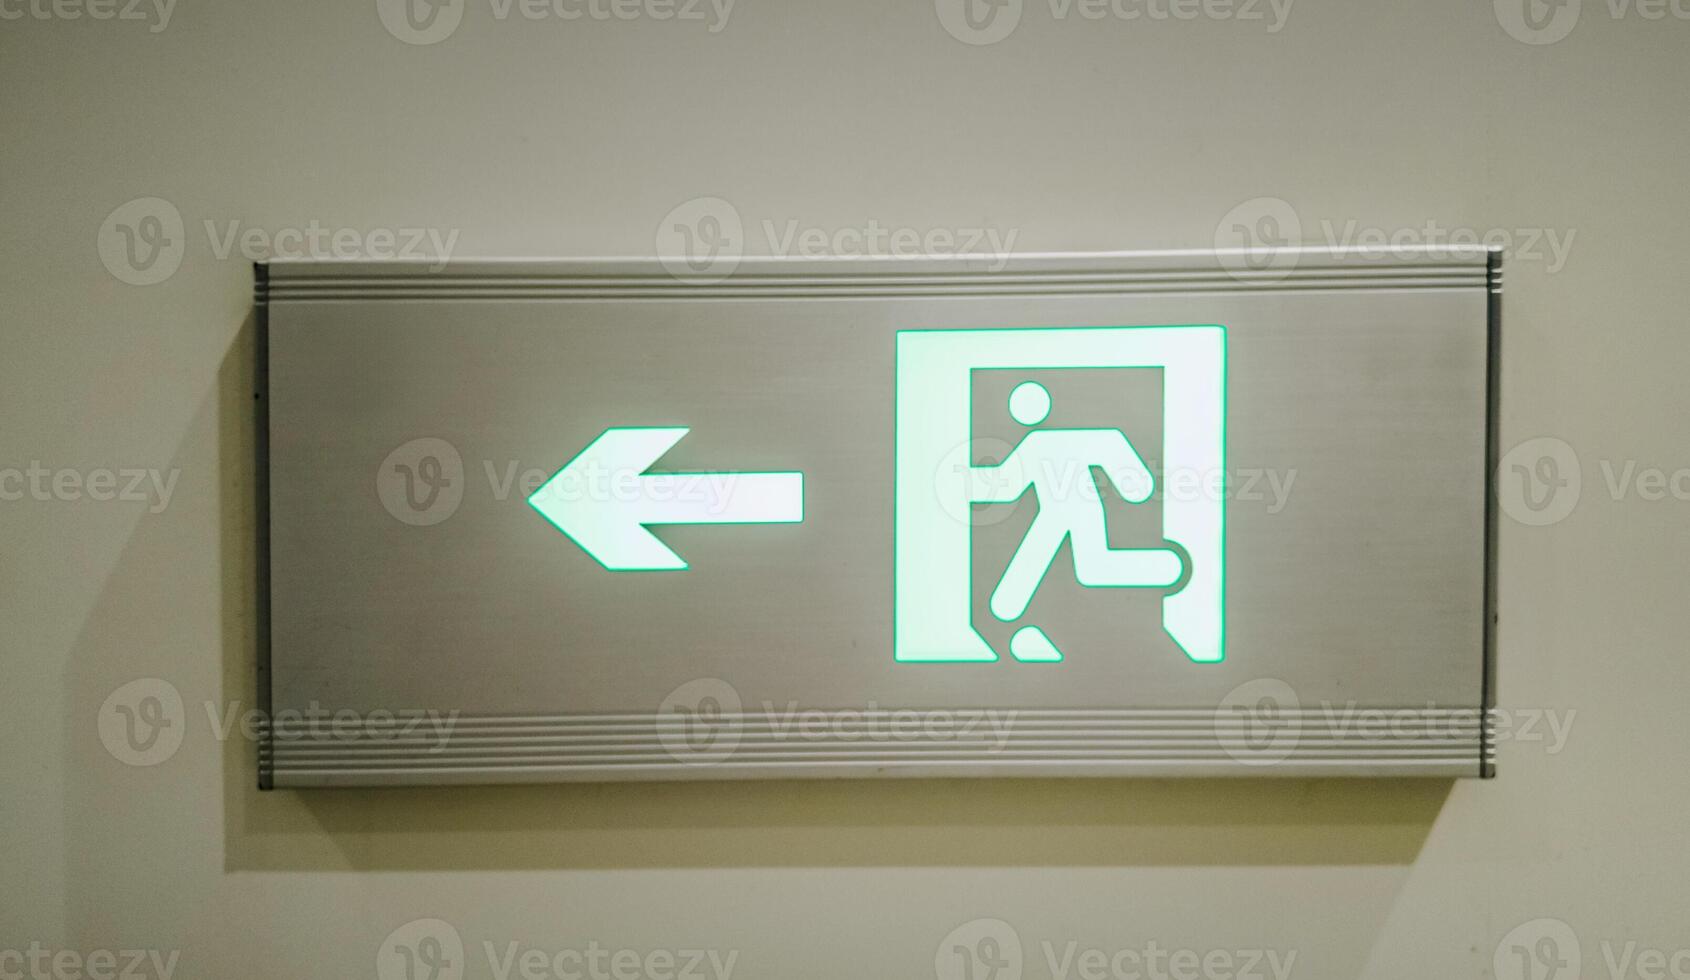 beleuchtet Grün Ausfahrt Zeichen mit Laufen Zahl und Pfeil Anzeige Richtung, Konzept verbunden zu Notfall Evakuierung und Sicherheit Protokolle foto